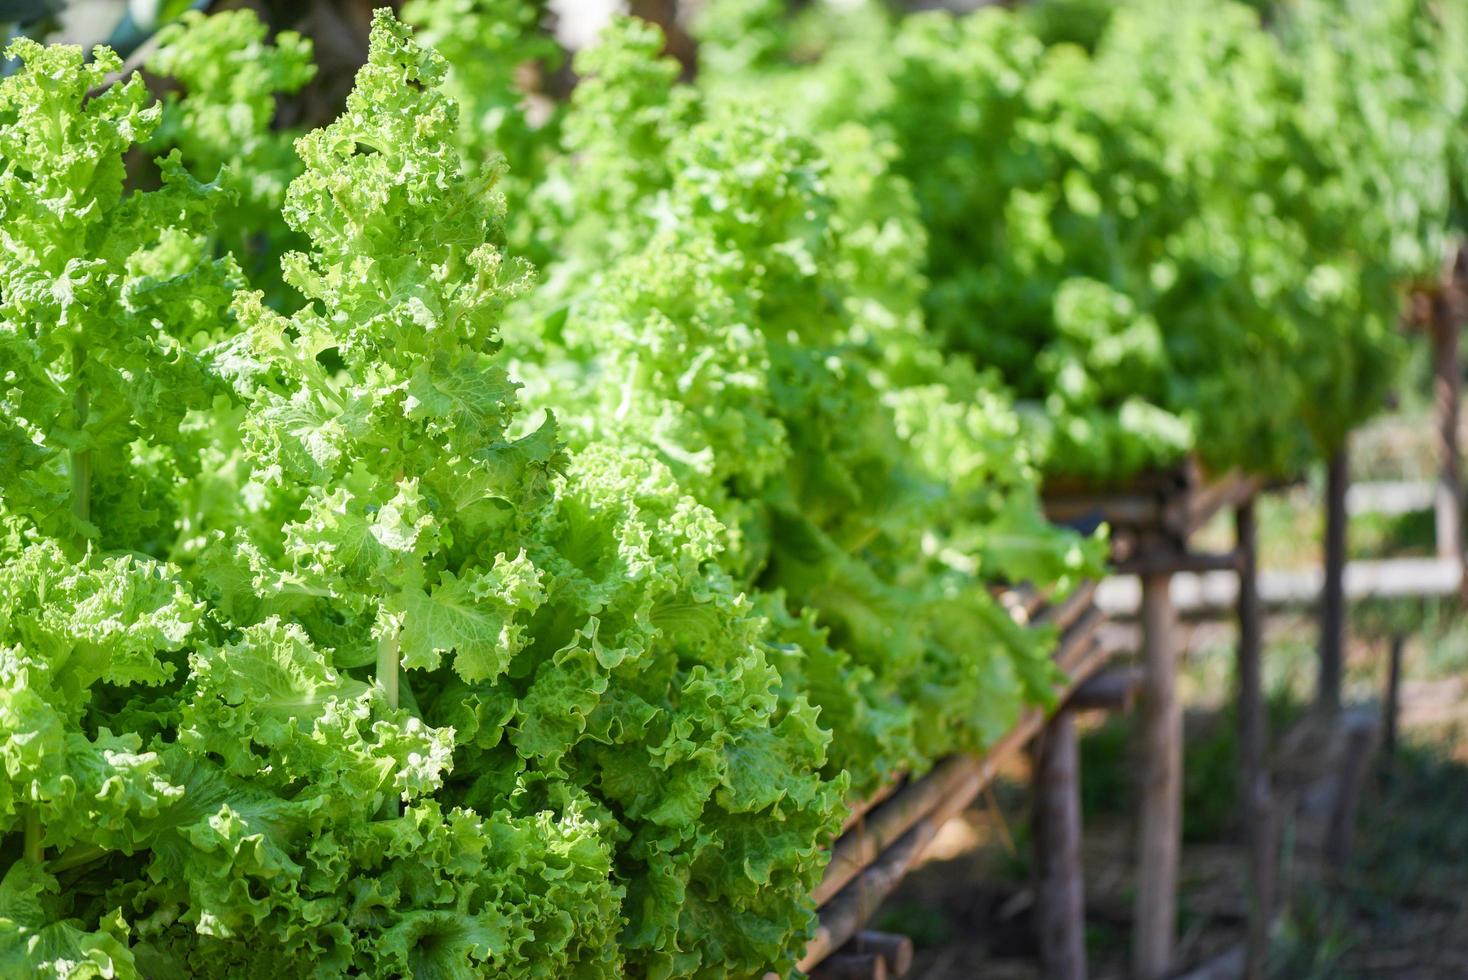 närbild av grön grönsakssallad i trädgårdsbakgrunden - färska frodiga salladsbladbakgrund på örtgård foto